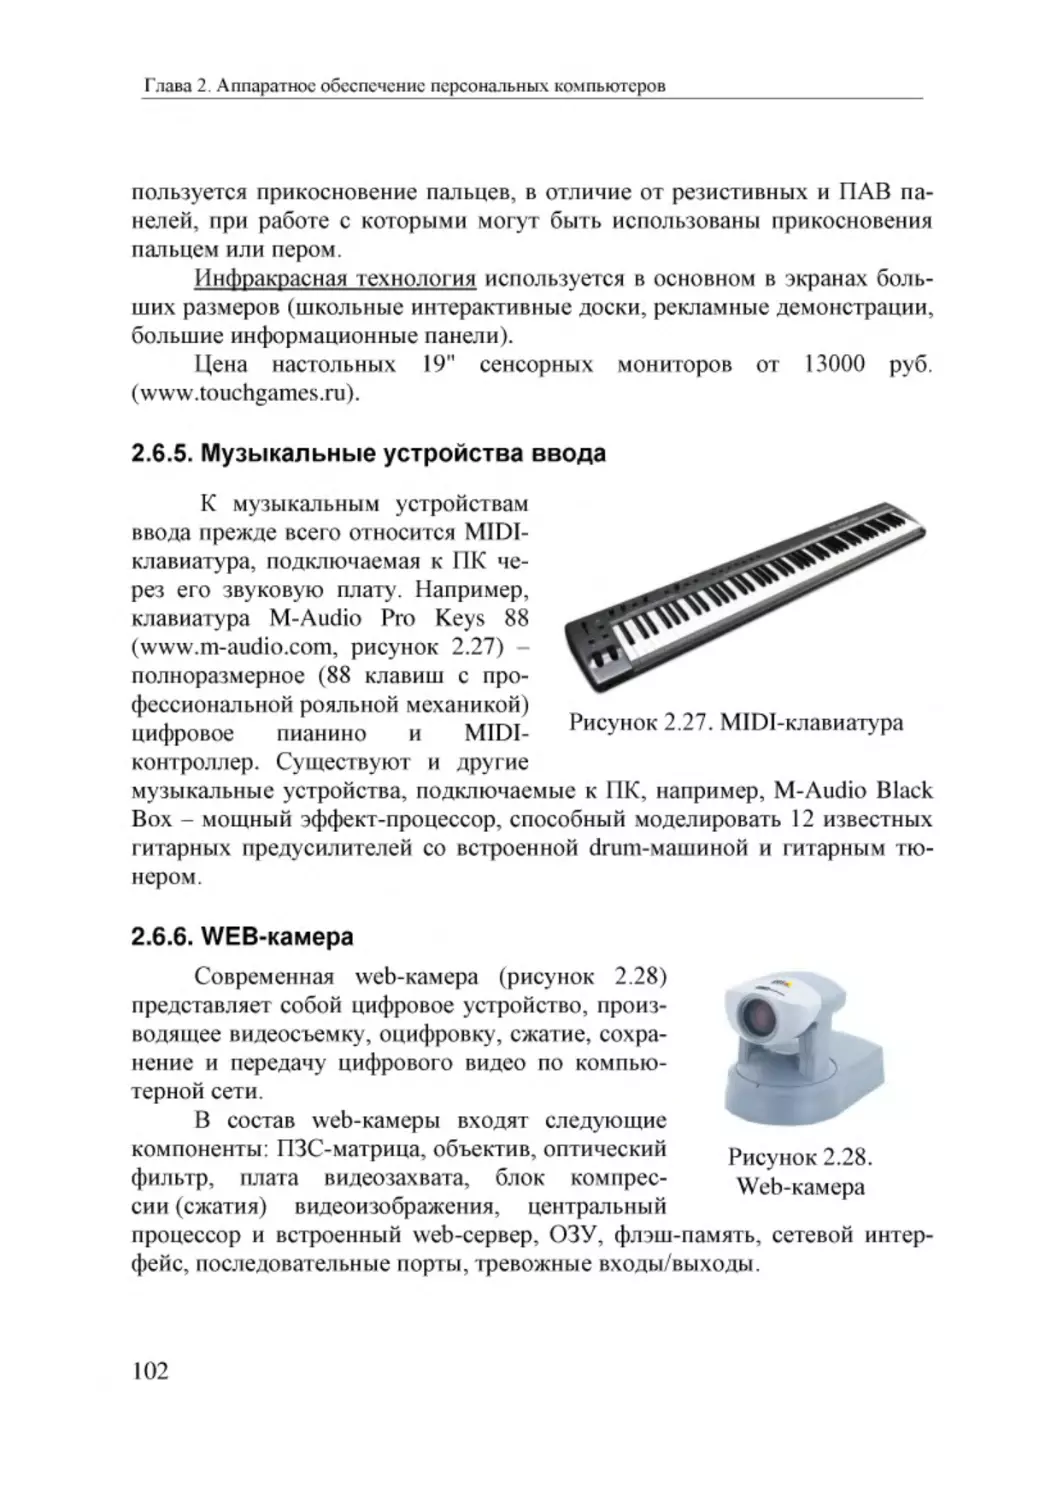 Informatika_Uchebnik_dlya_vuzov_2010 102